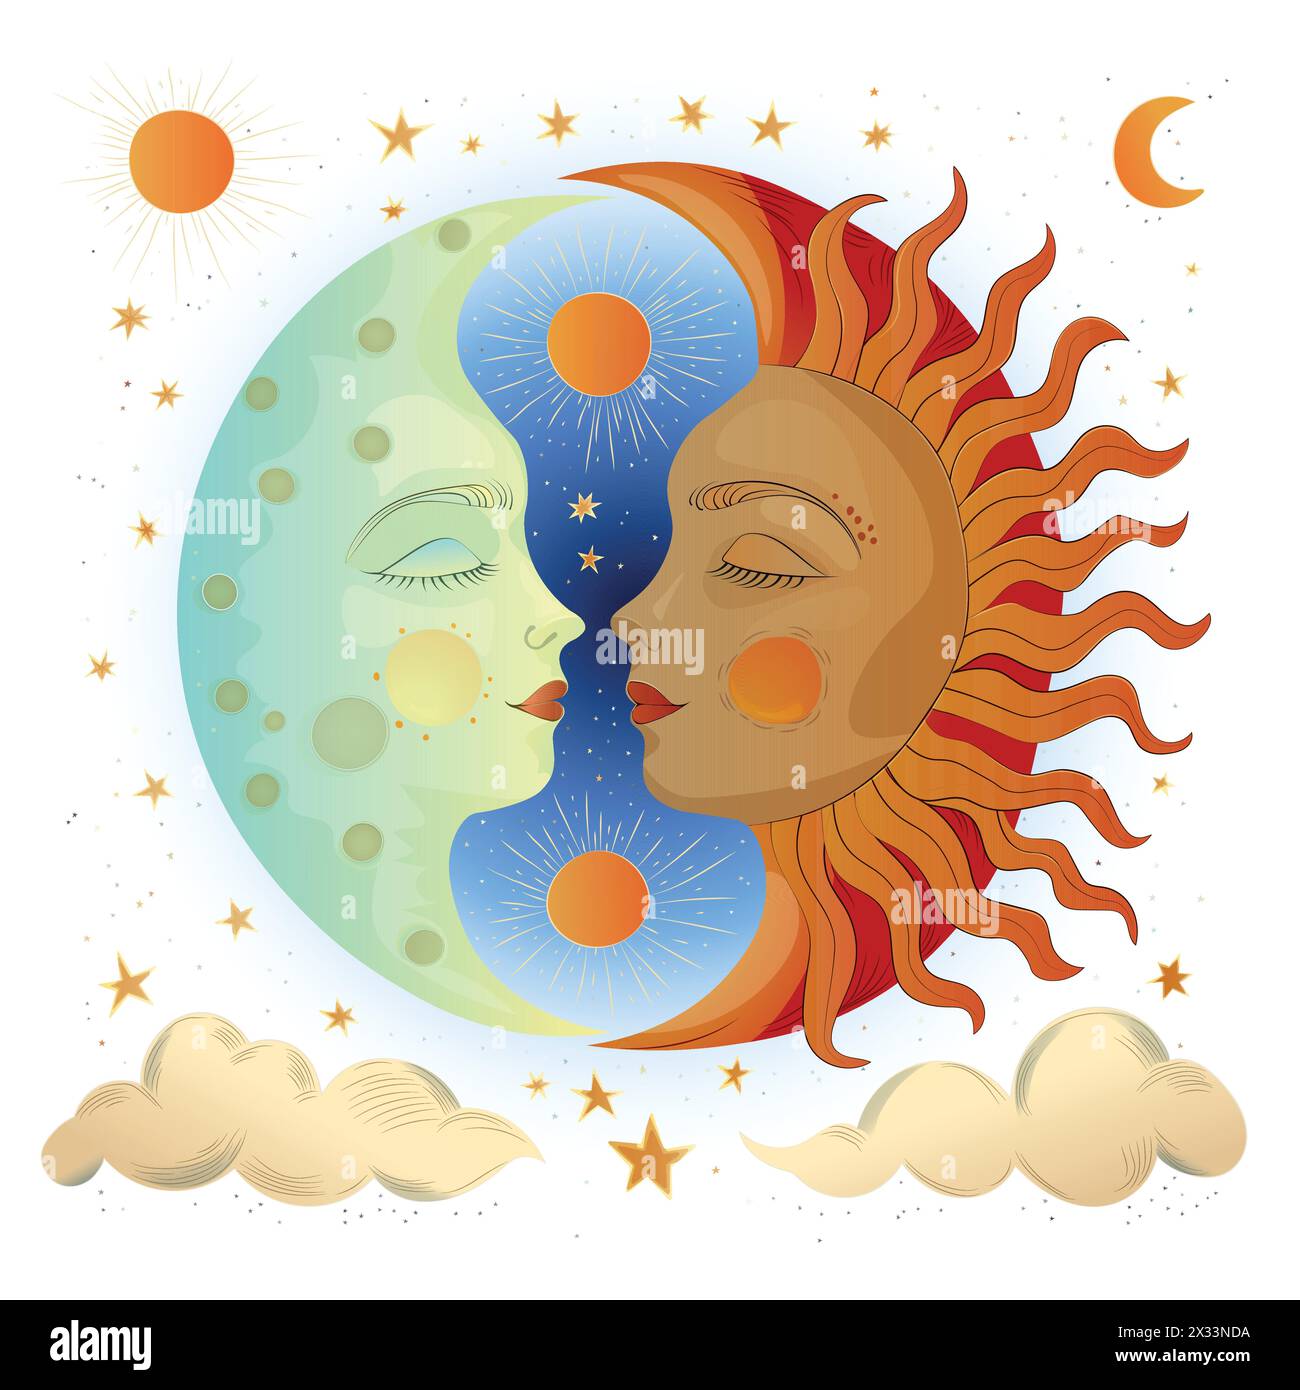 Semplice disegno per la copertina di un libro per bambini che raffigura il favoloso sole e luna slavi Illustrazione Vettoriale